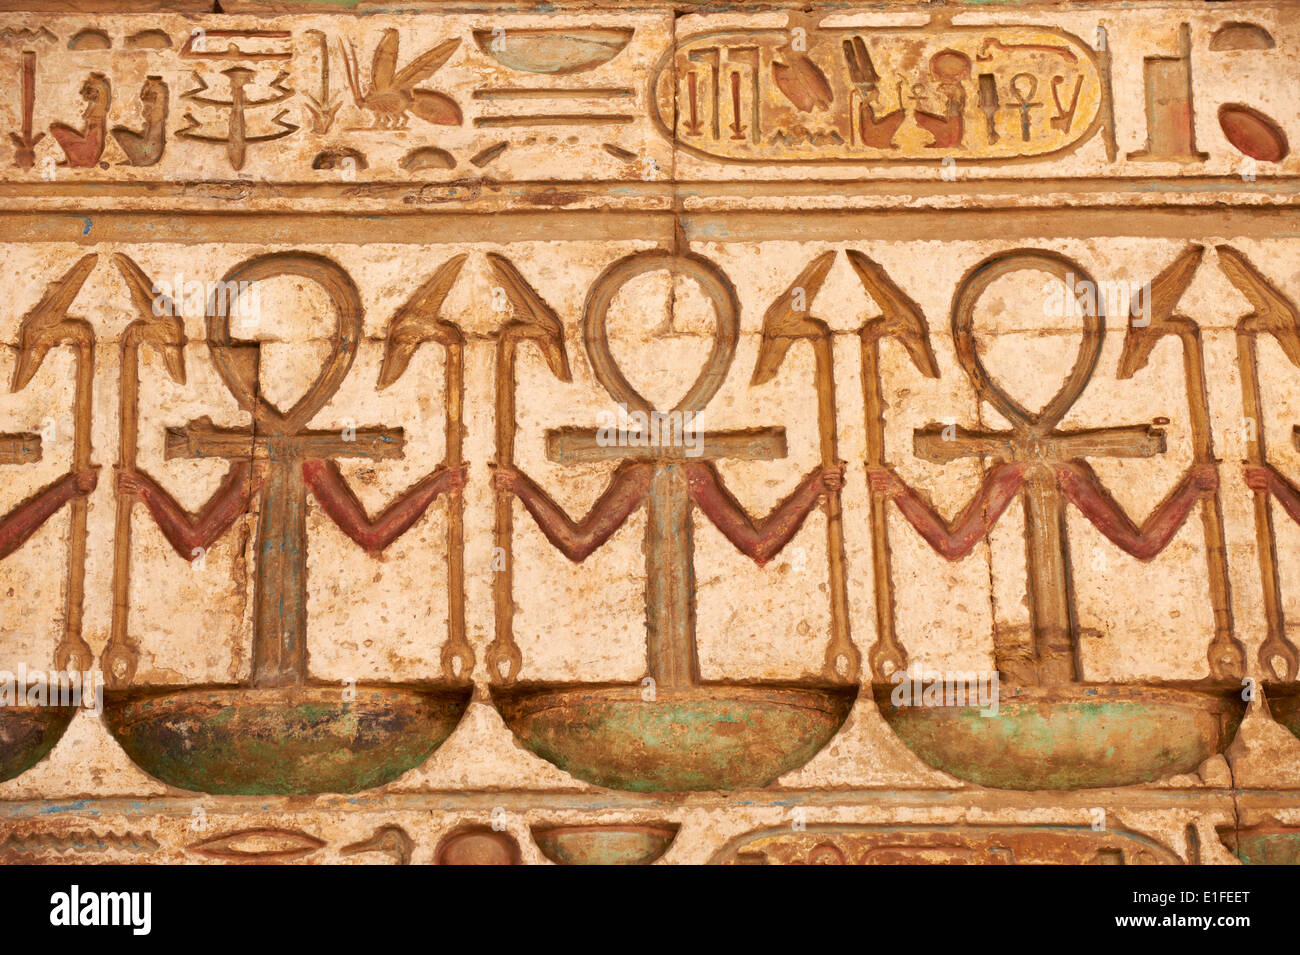 Egipto, El Valle del Nilo, Luxor, Tebas, el templo de Karnak, Sitio del Patrimonio Mundial de la UNESCO Foto de stock